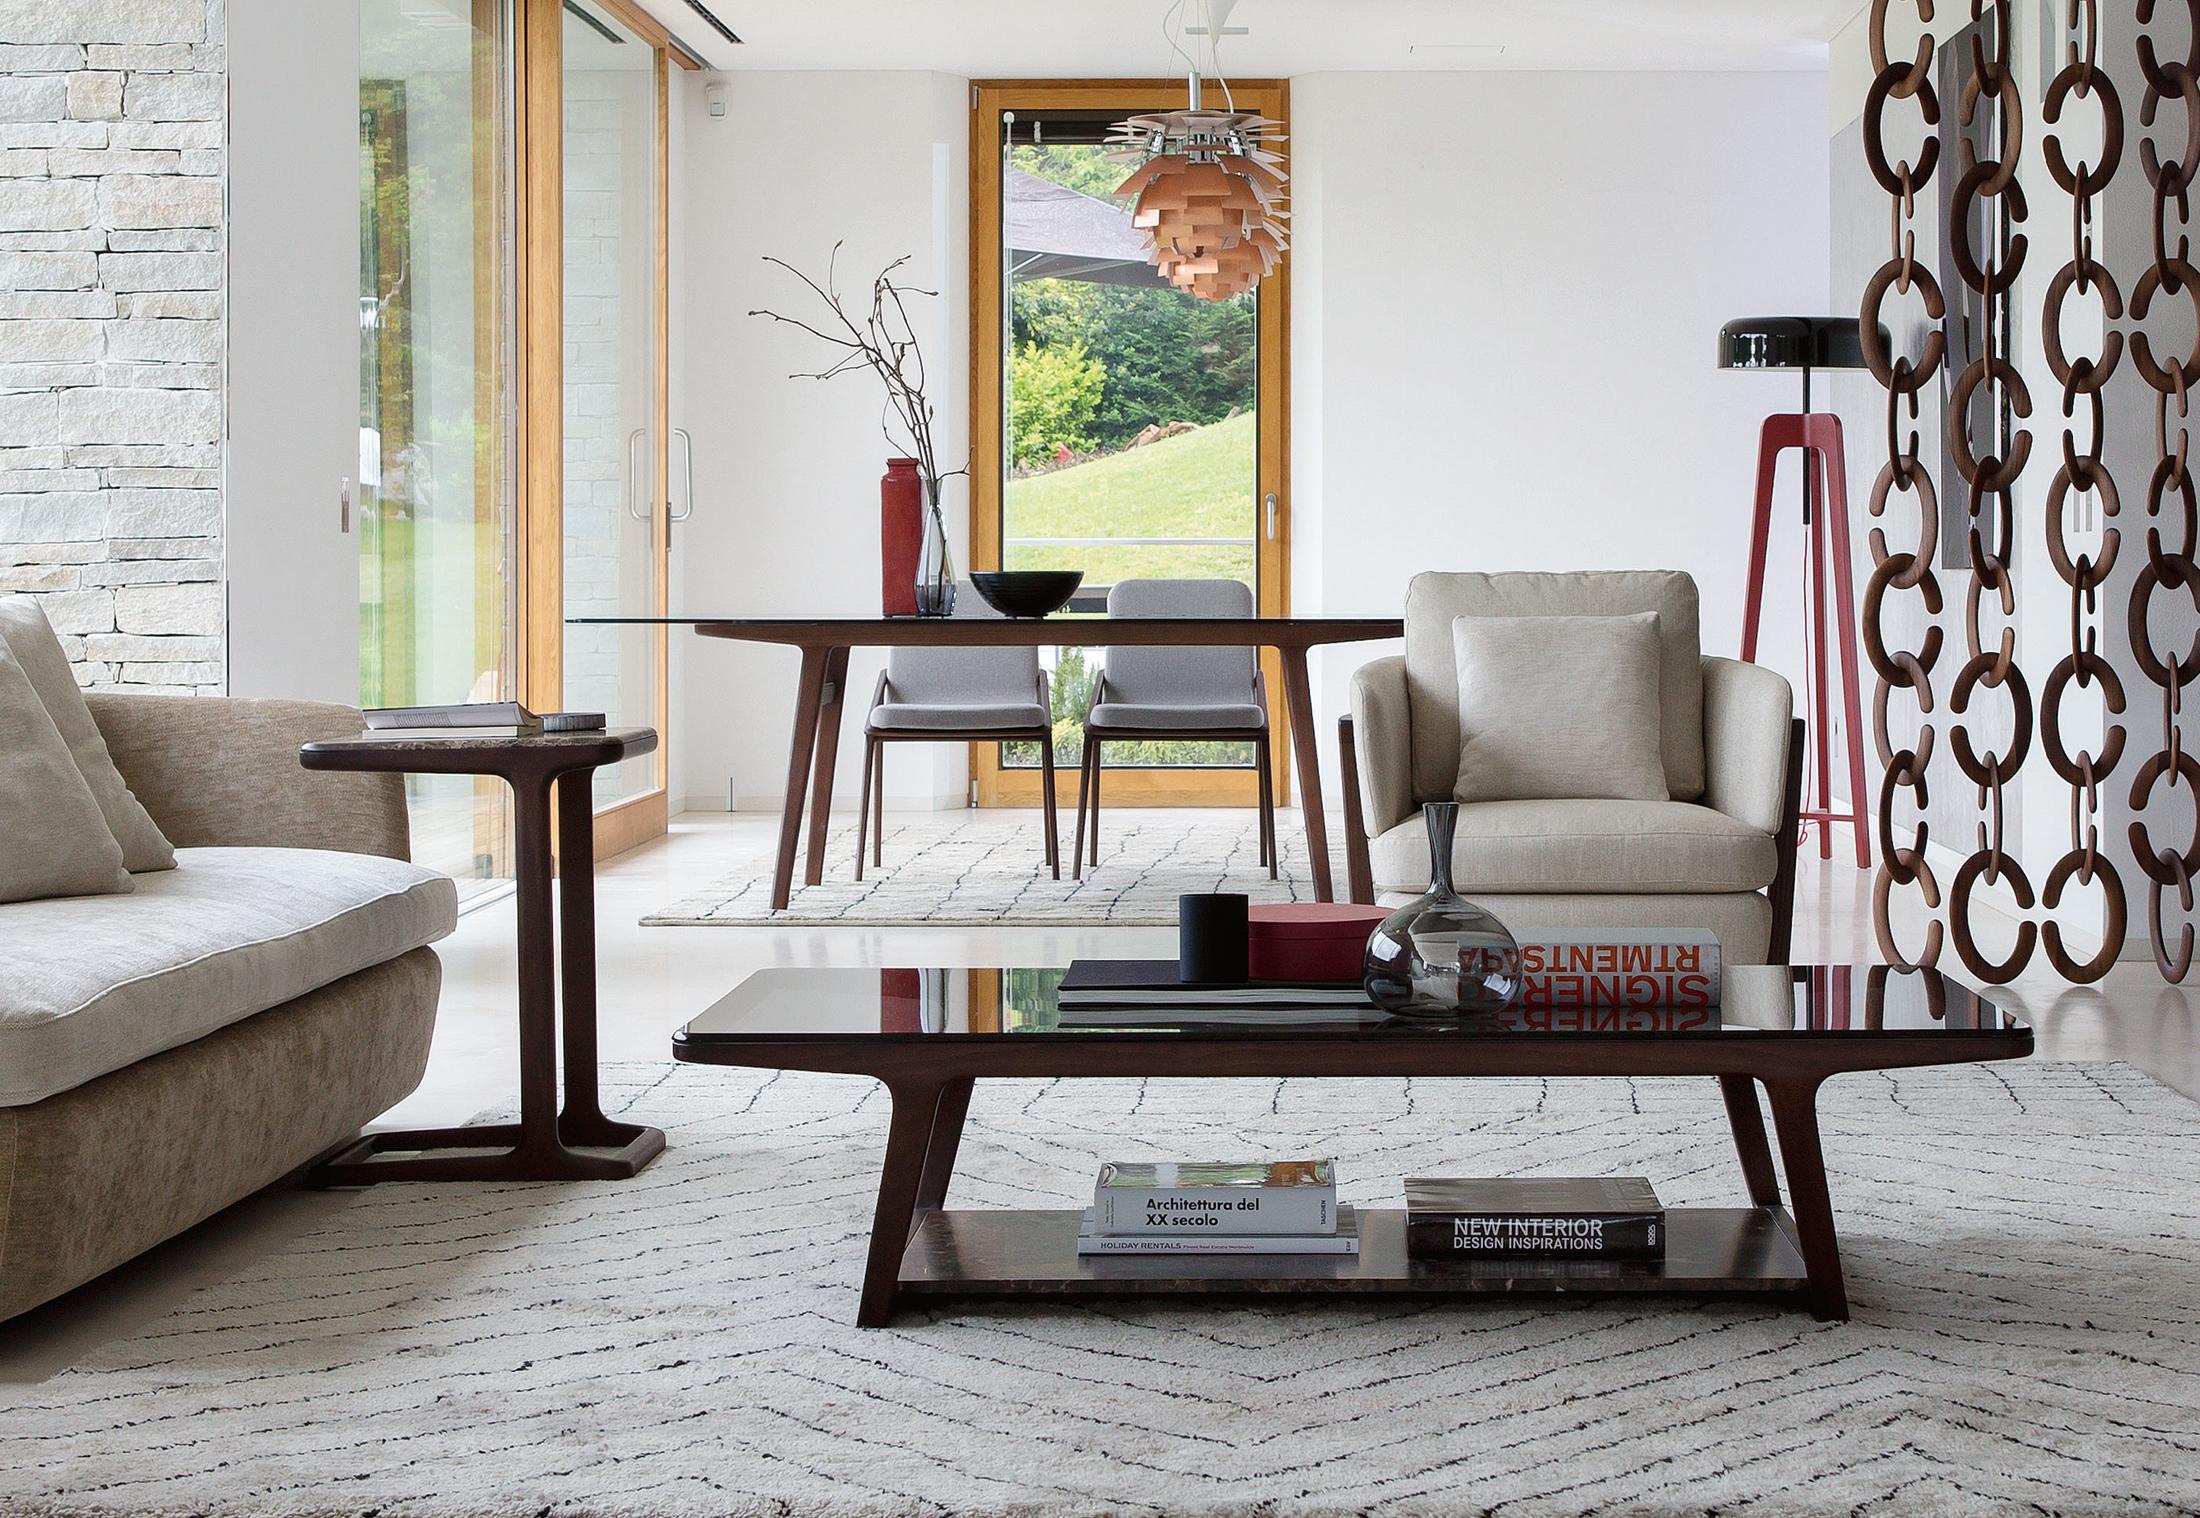 Wohnraum mit Raumtrenner optimal nutzen #stuhl #couchtisch #beistelltisch #teppich #esstisch #sessel #pendelleuchte #sofa ©Porada